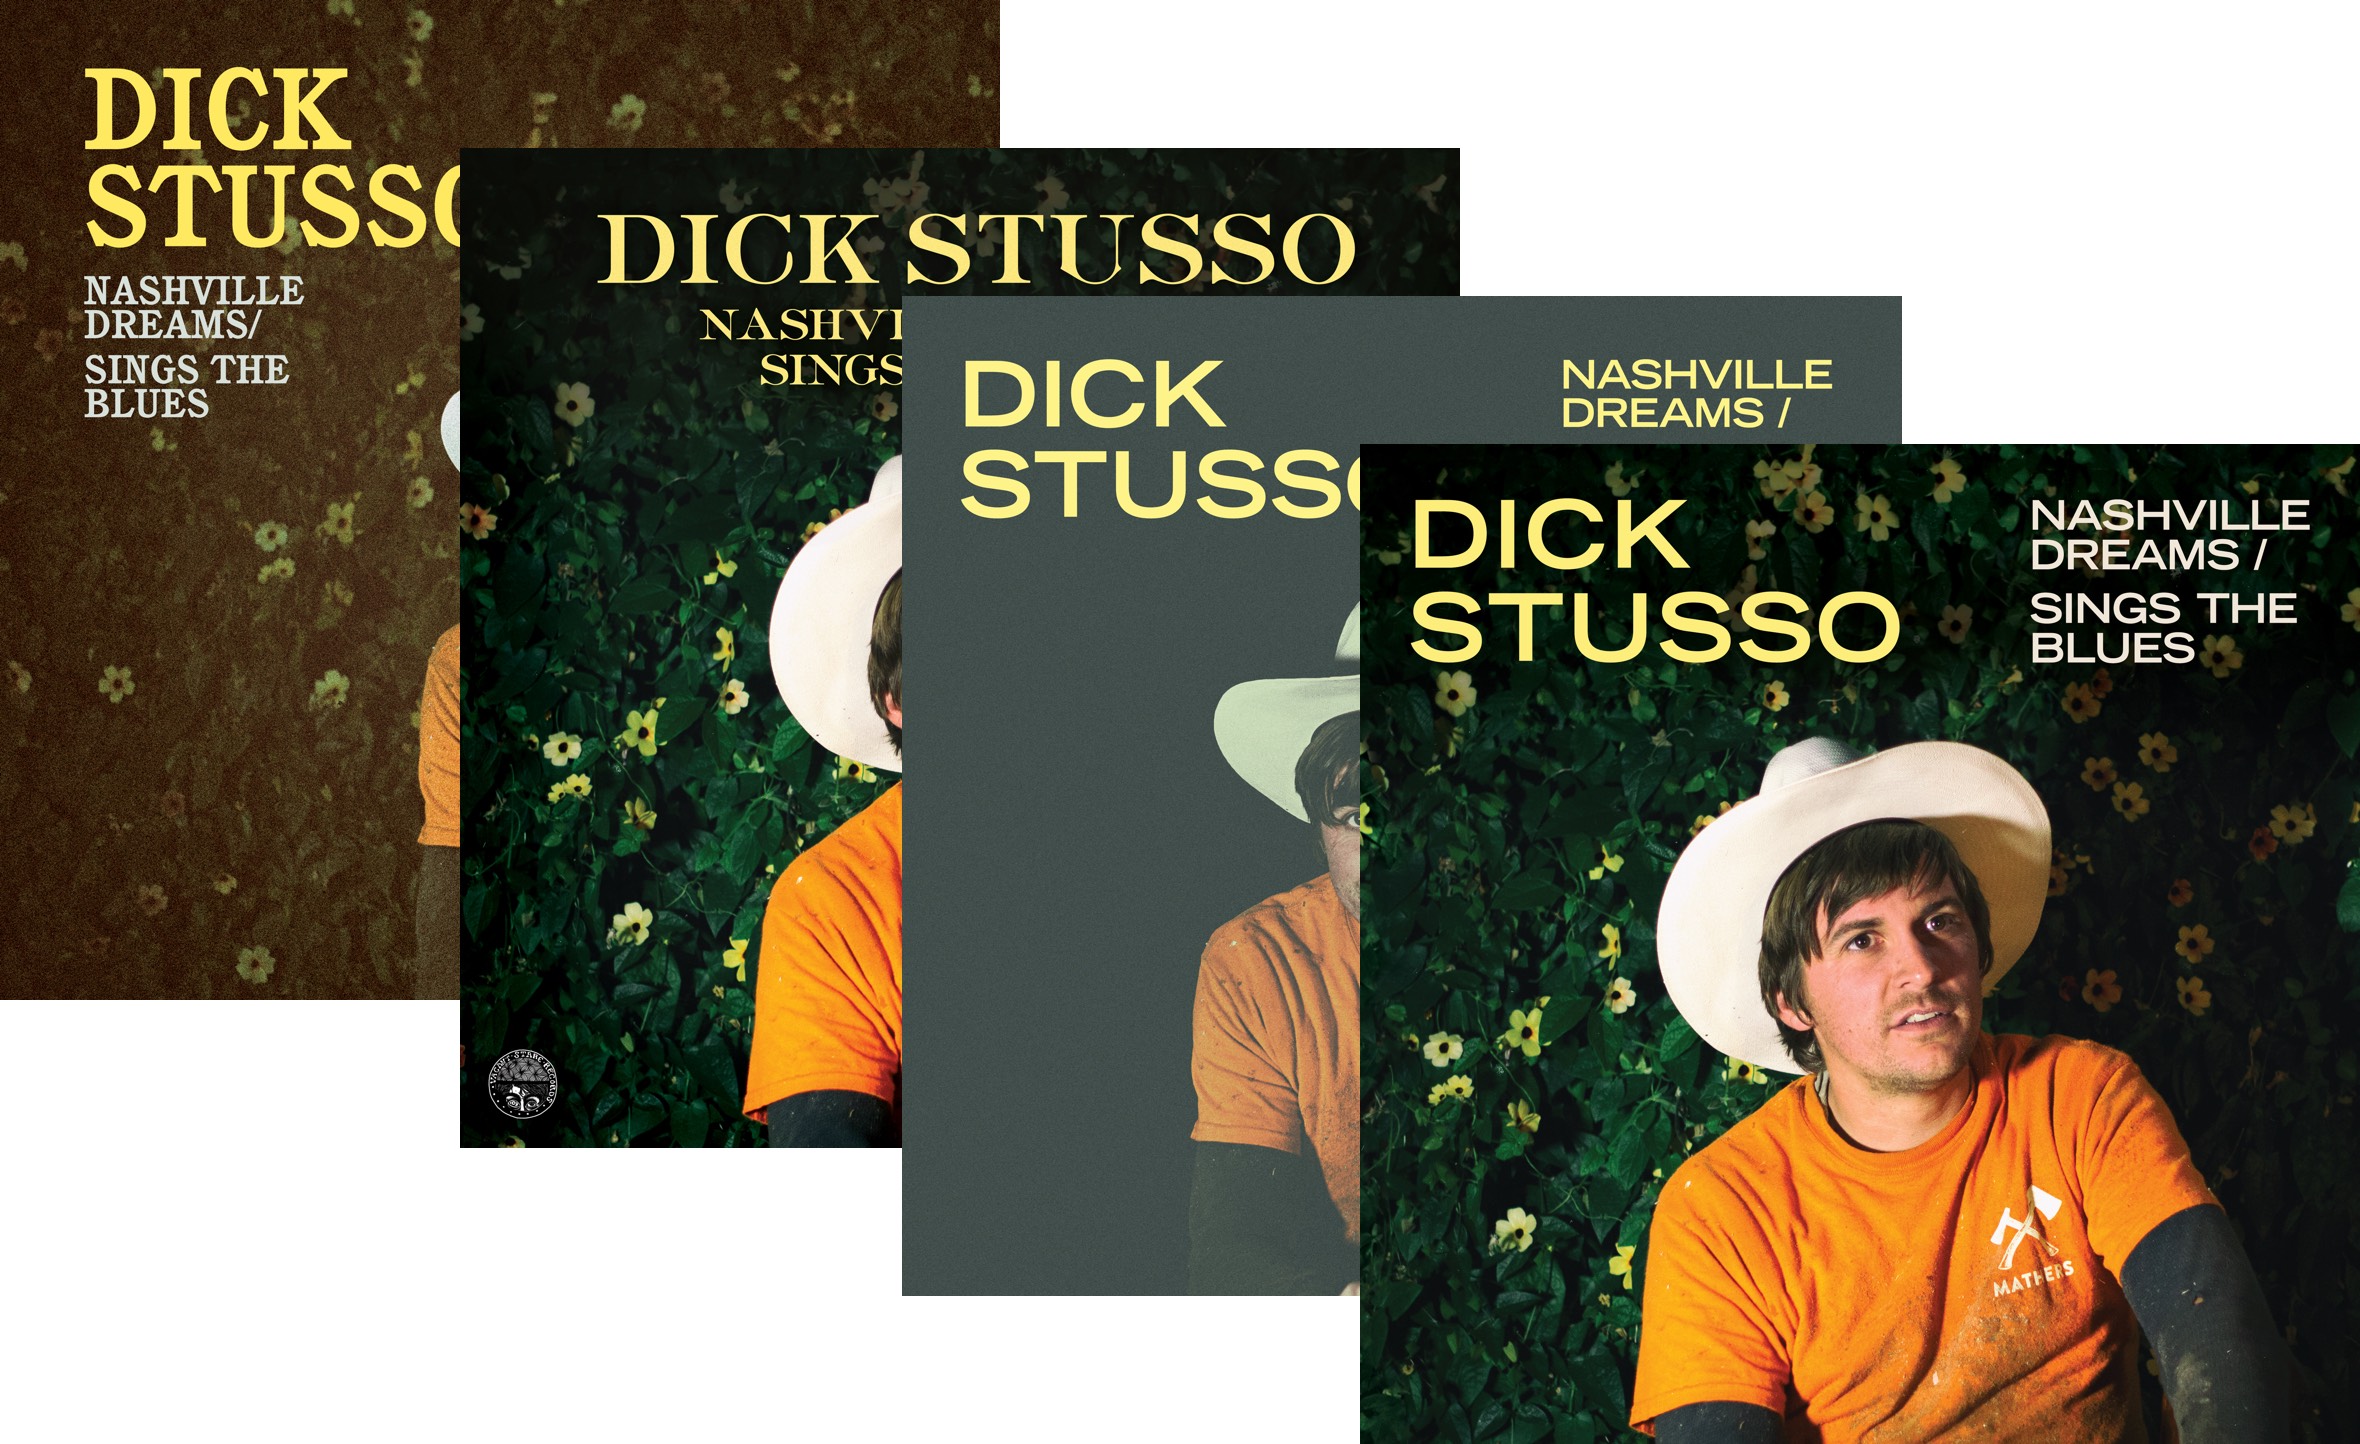 Album cover concept development for Dick Stusso's Nashville Dreams/Sings the Blues